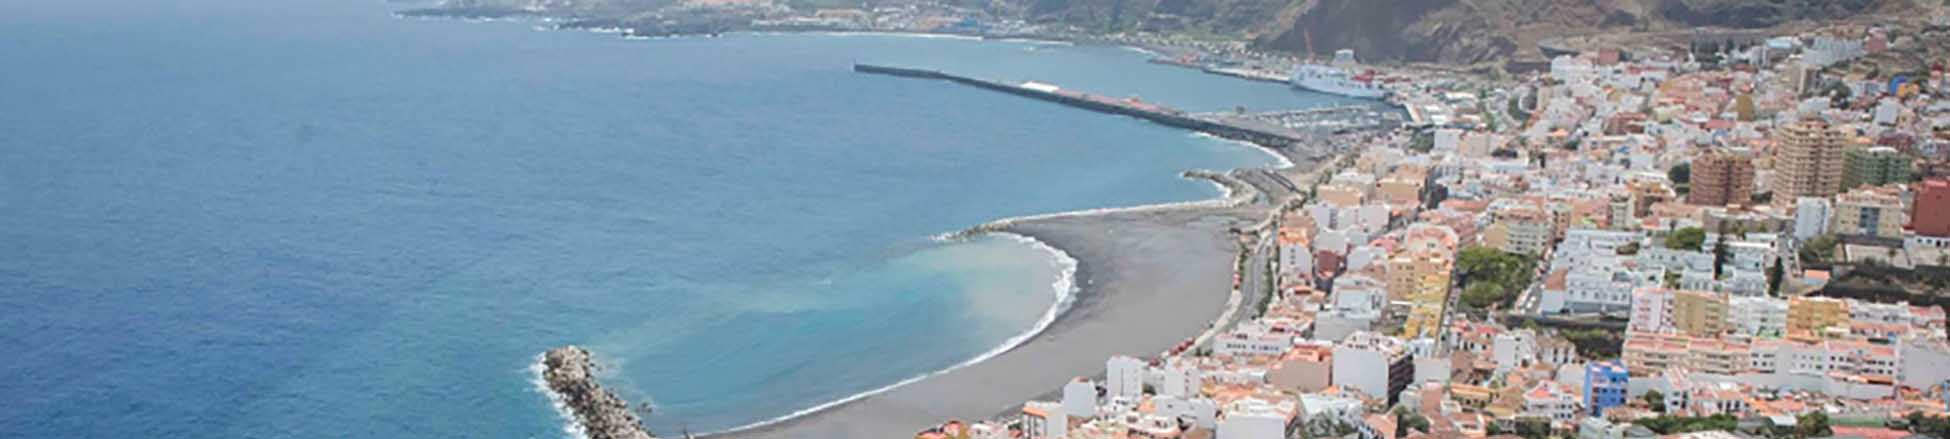 Imatge recurs del port de destinació La Palma (S.C. de la Palma) per a la ruta en ferry Tenerife (Los Cristianos) - La Palma (S.C. de la Palma)